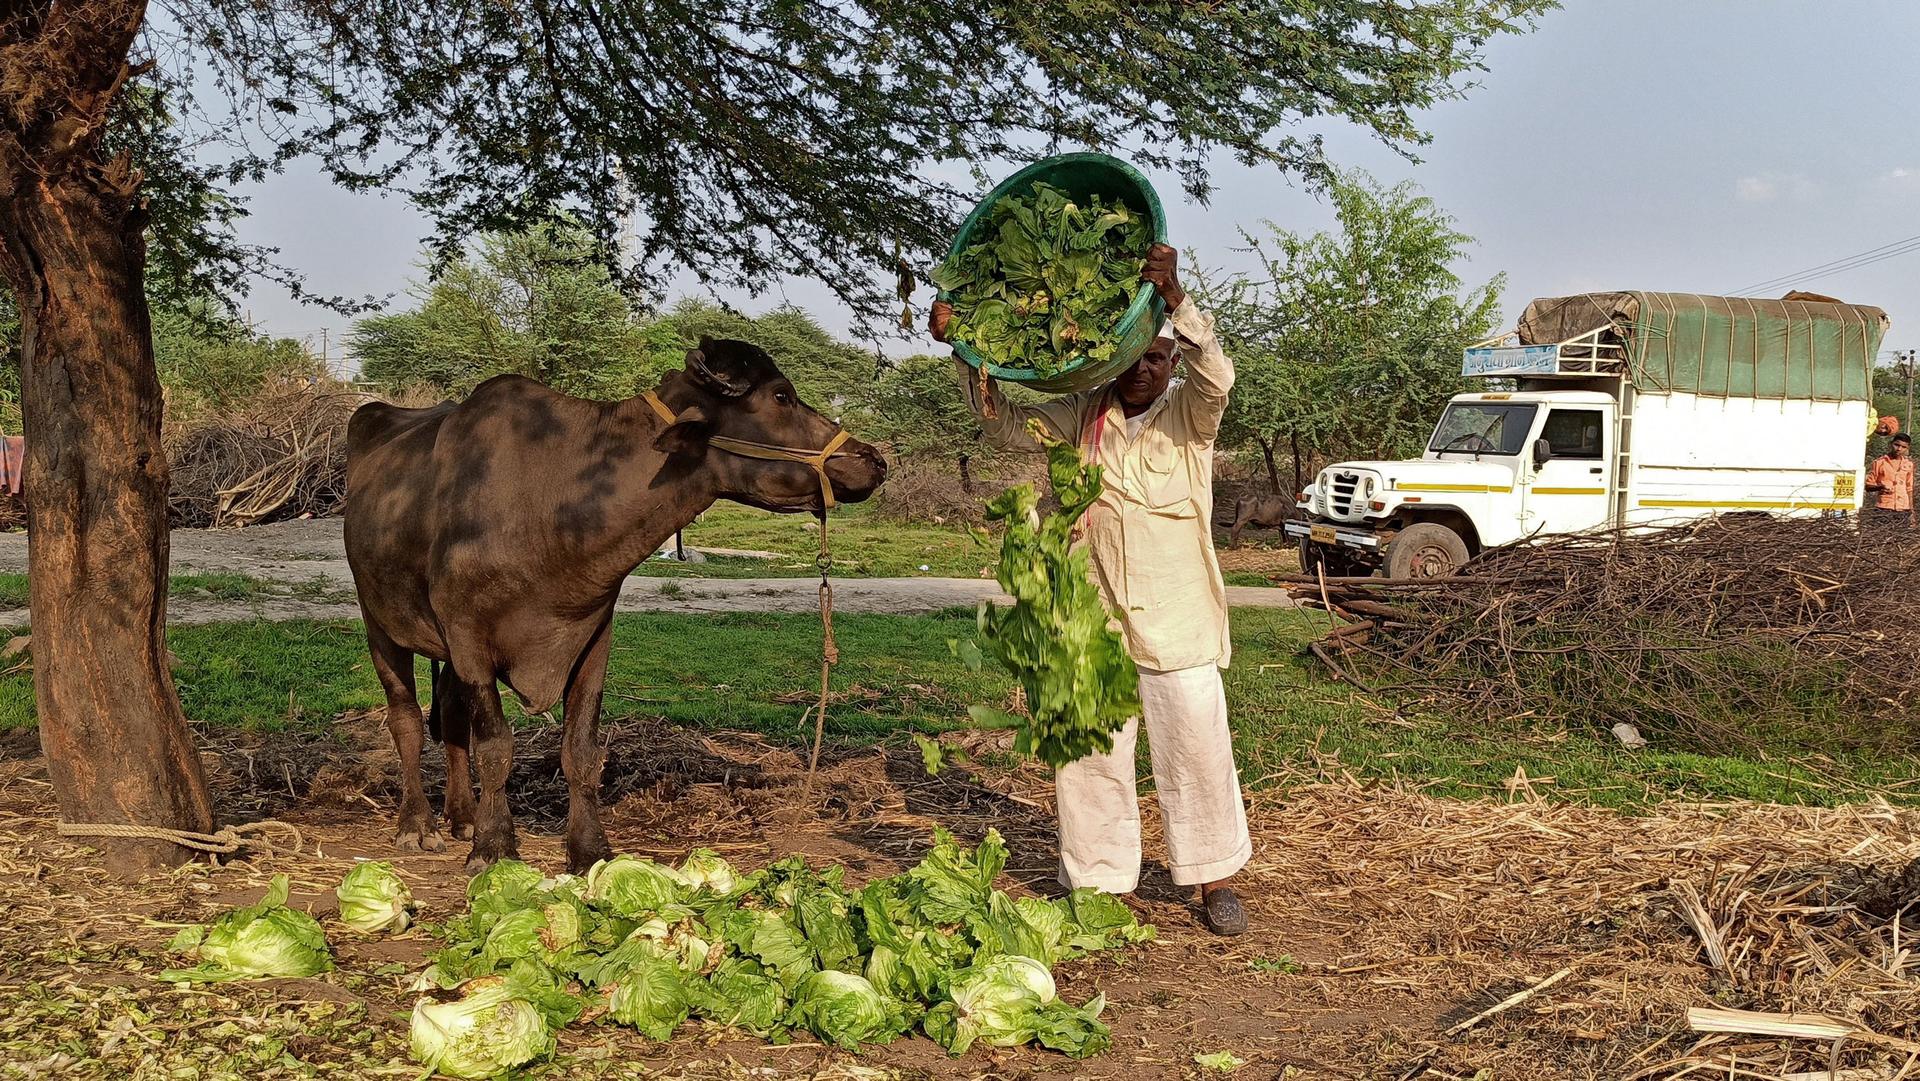 A man dumps lettuce in front of a buffalo. 